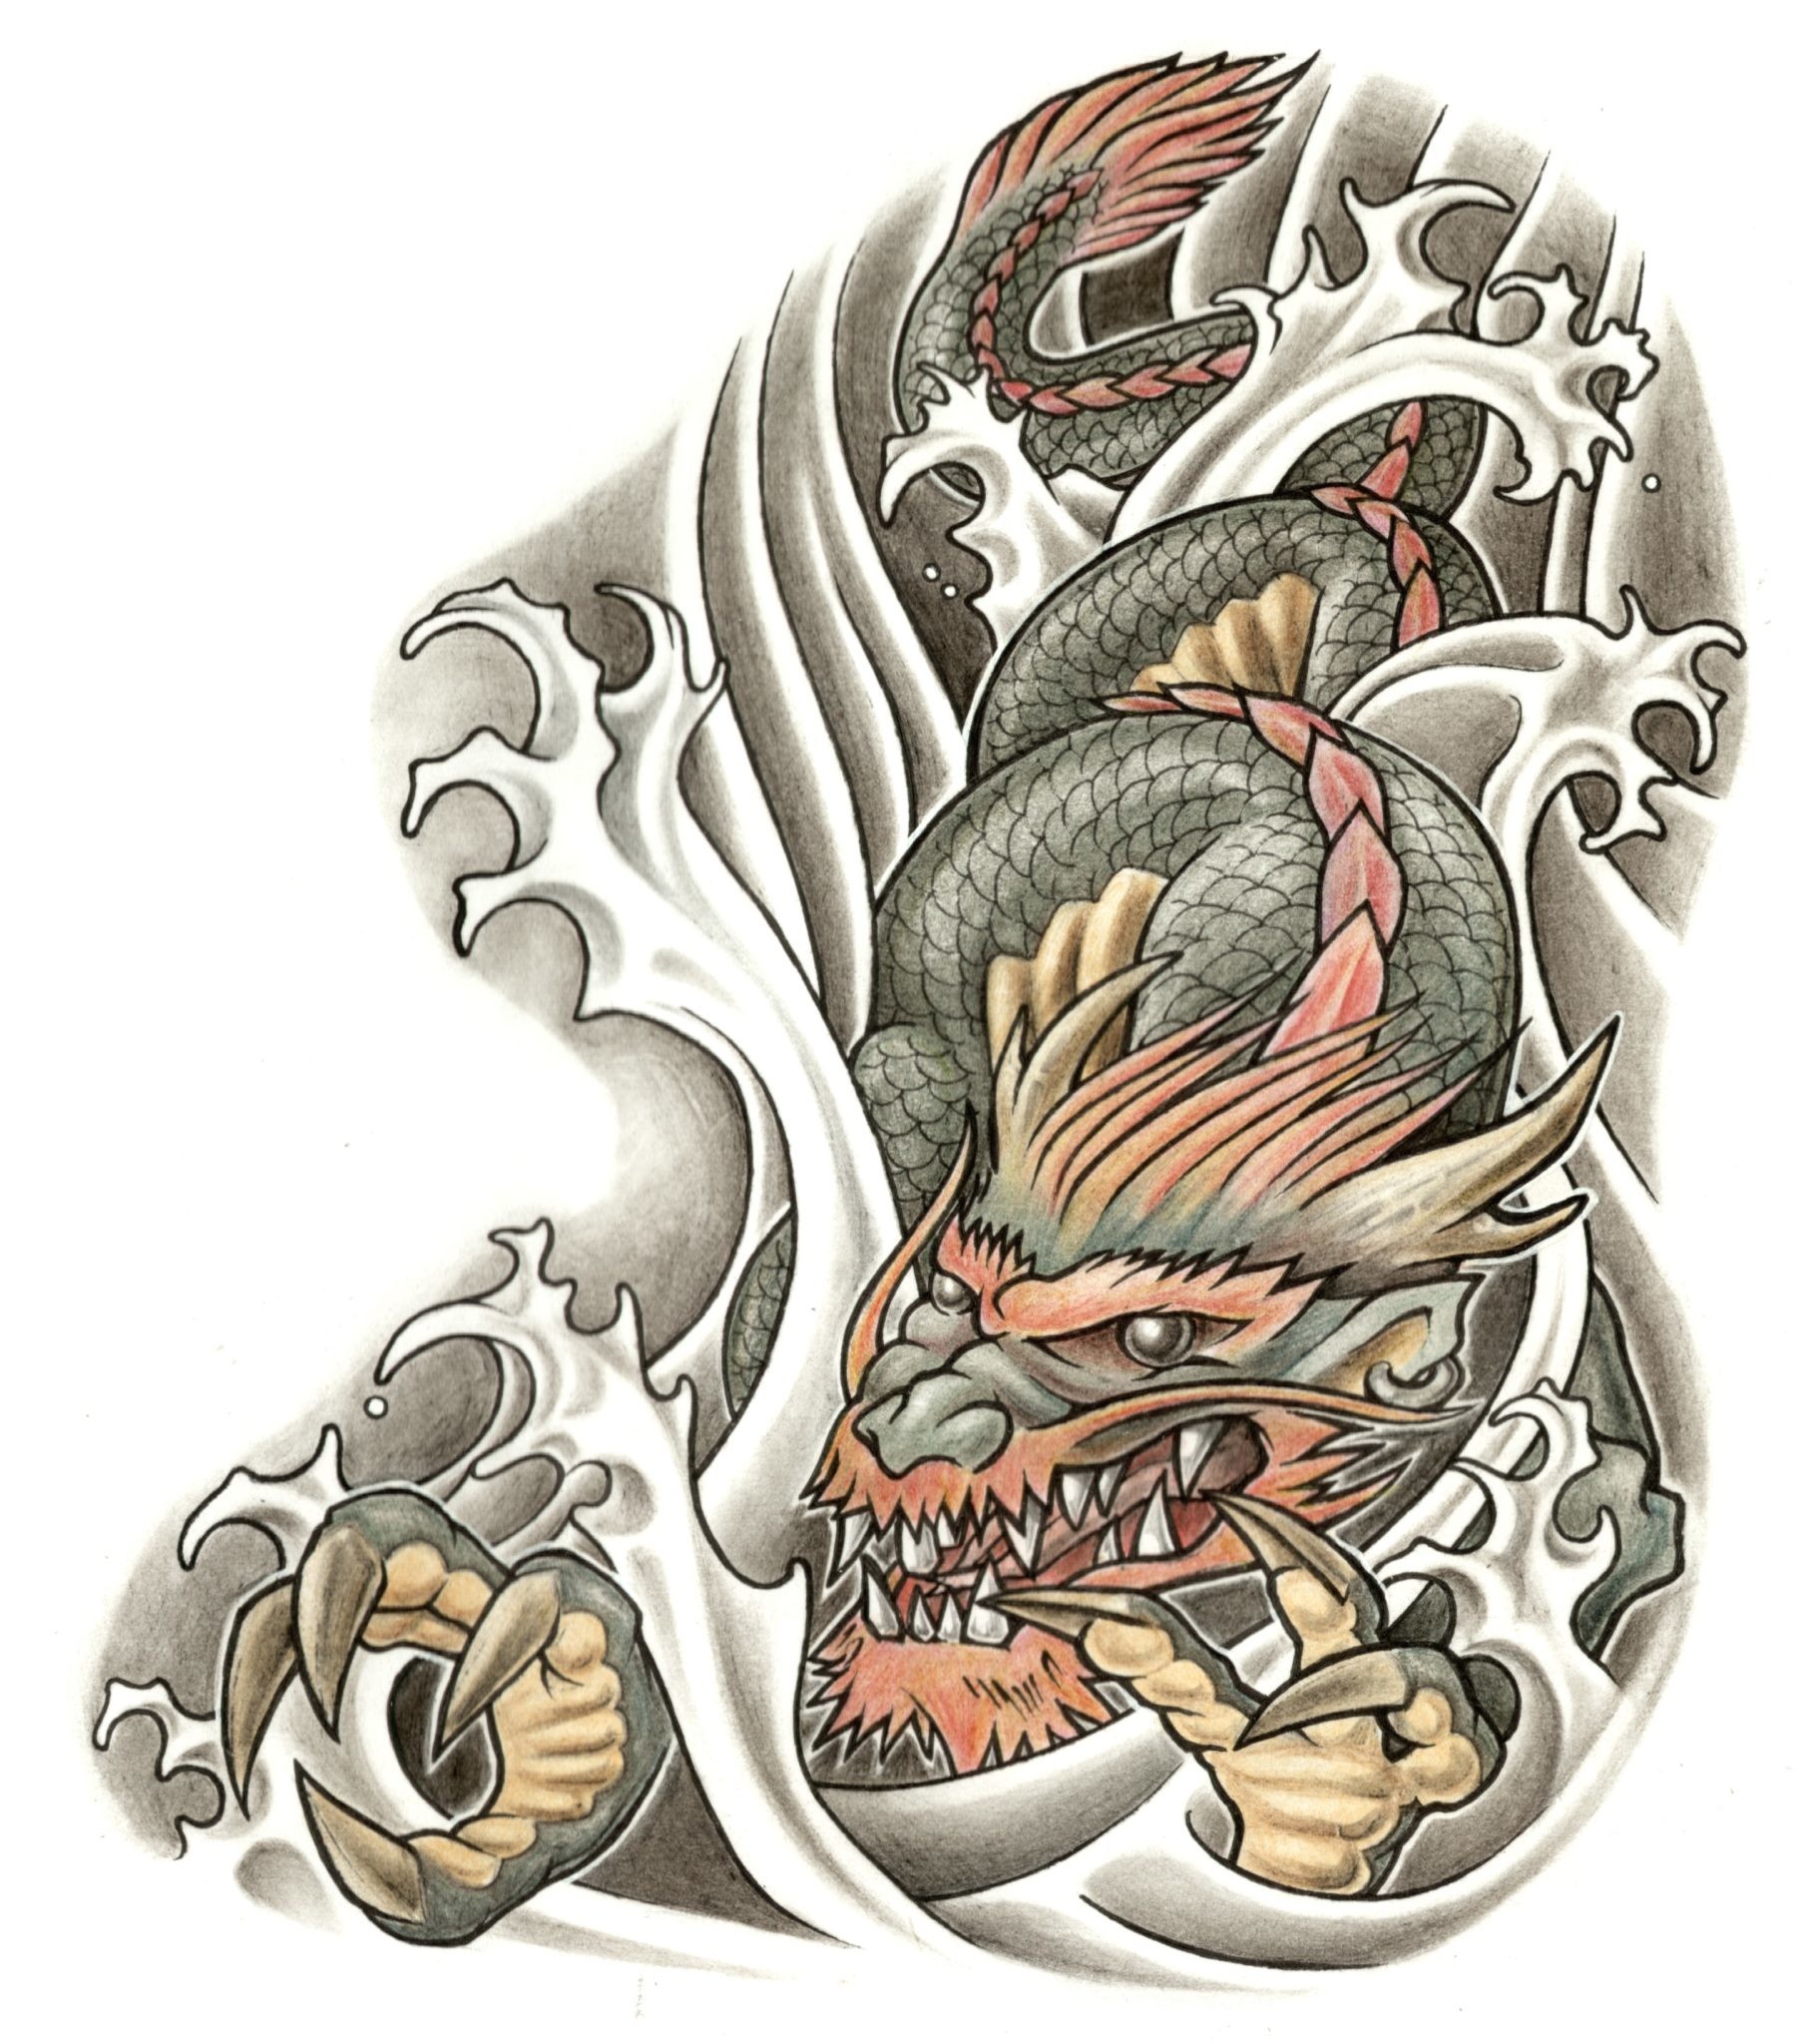 전통적인 문신 벽지,타투,삽화,소설 속의 인물,날개,임시 문신